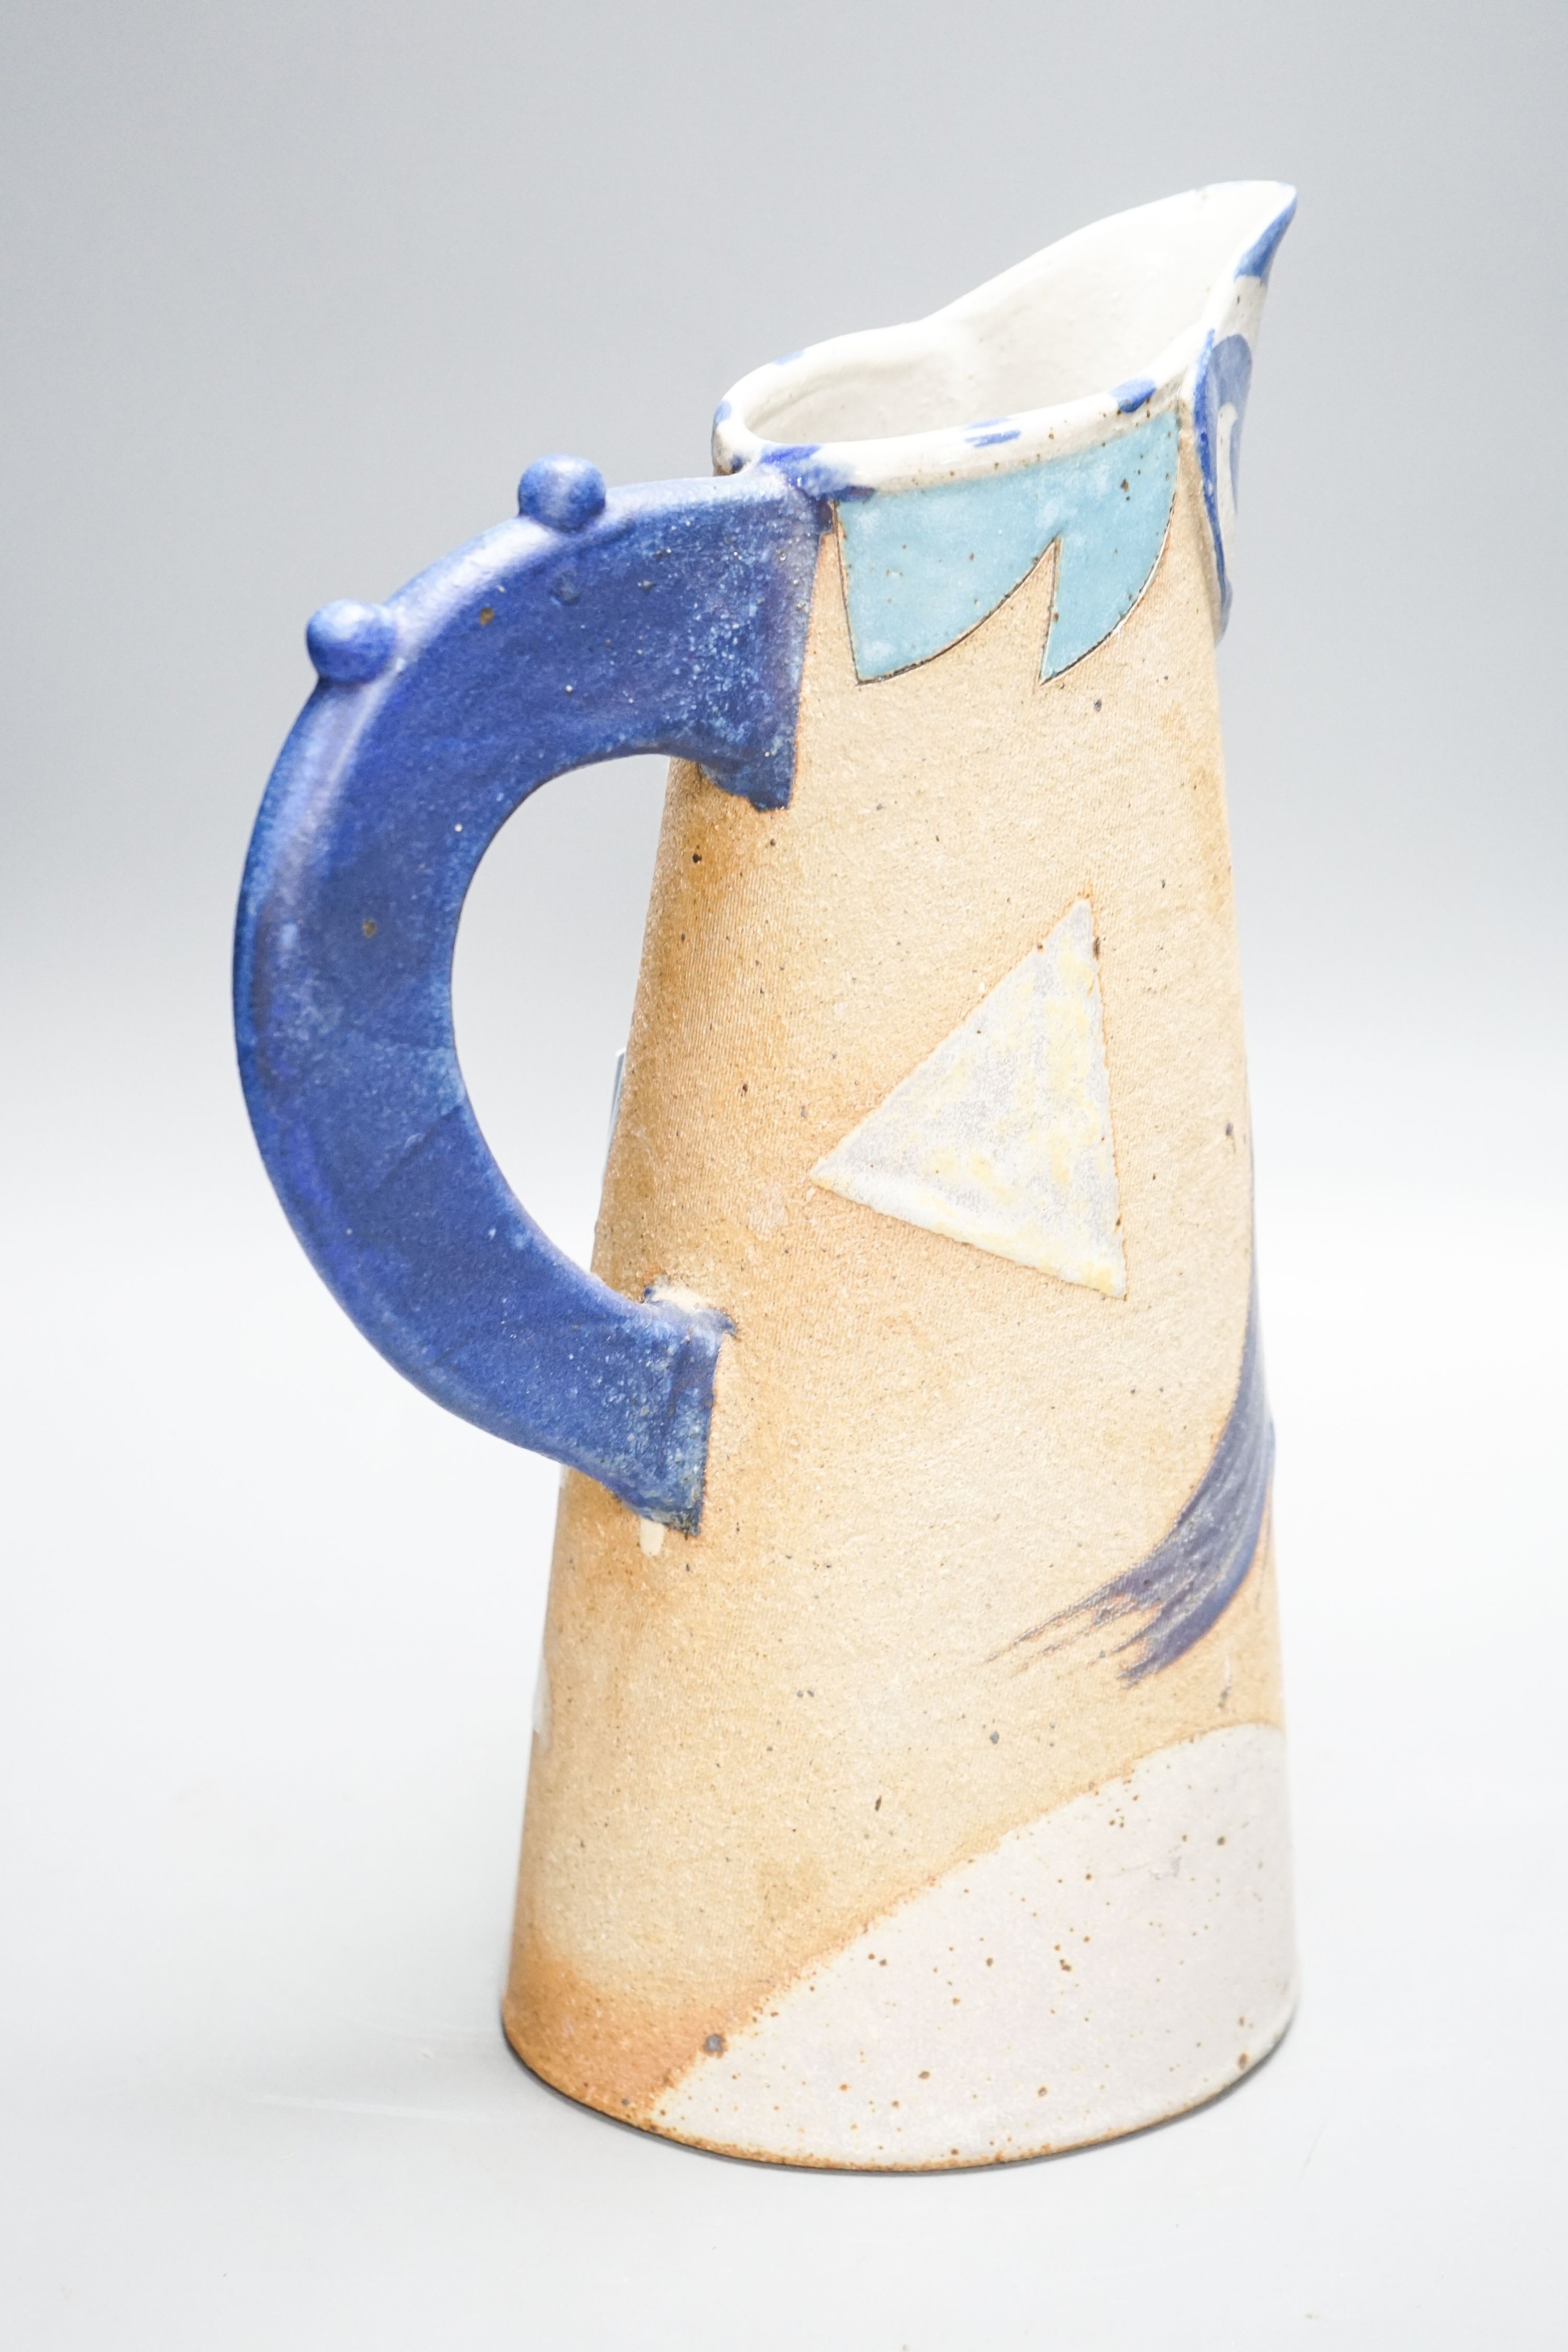 Jill Fanshawe Kato (b.1943), a tall slip decorated stoneware jug 35cm